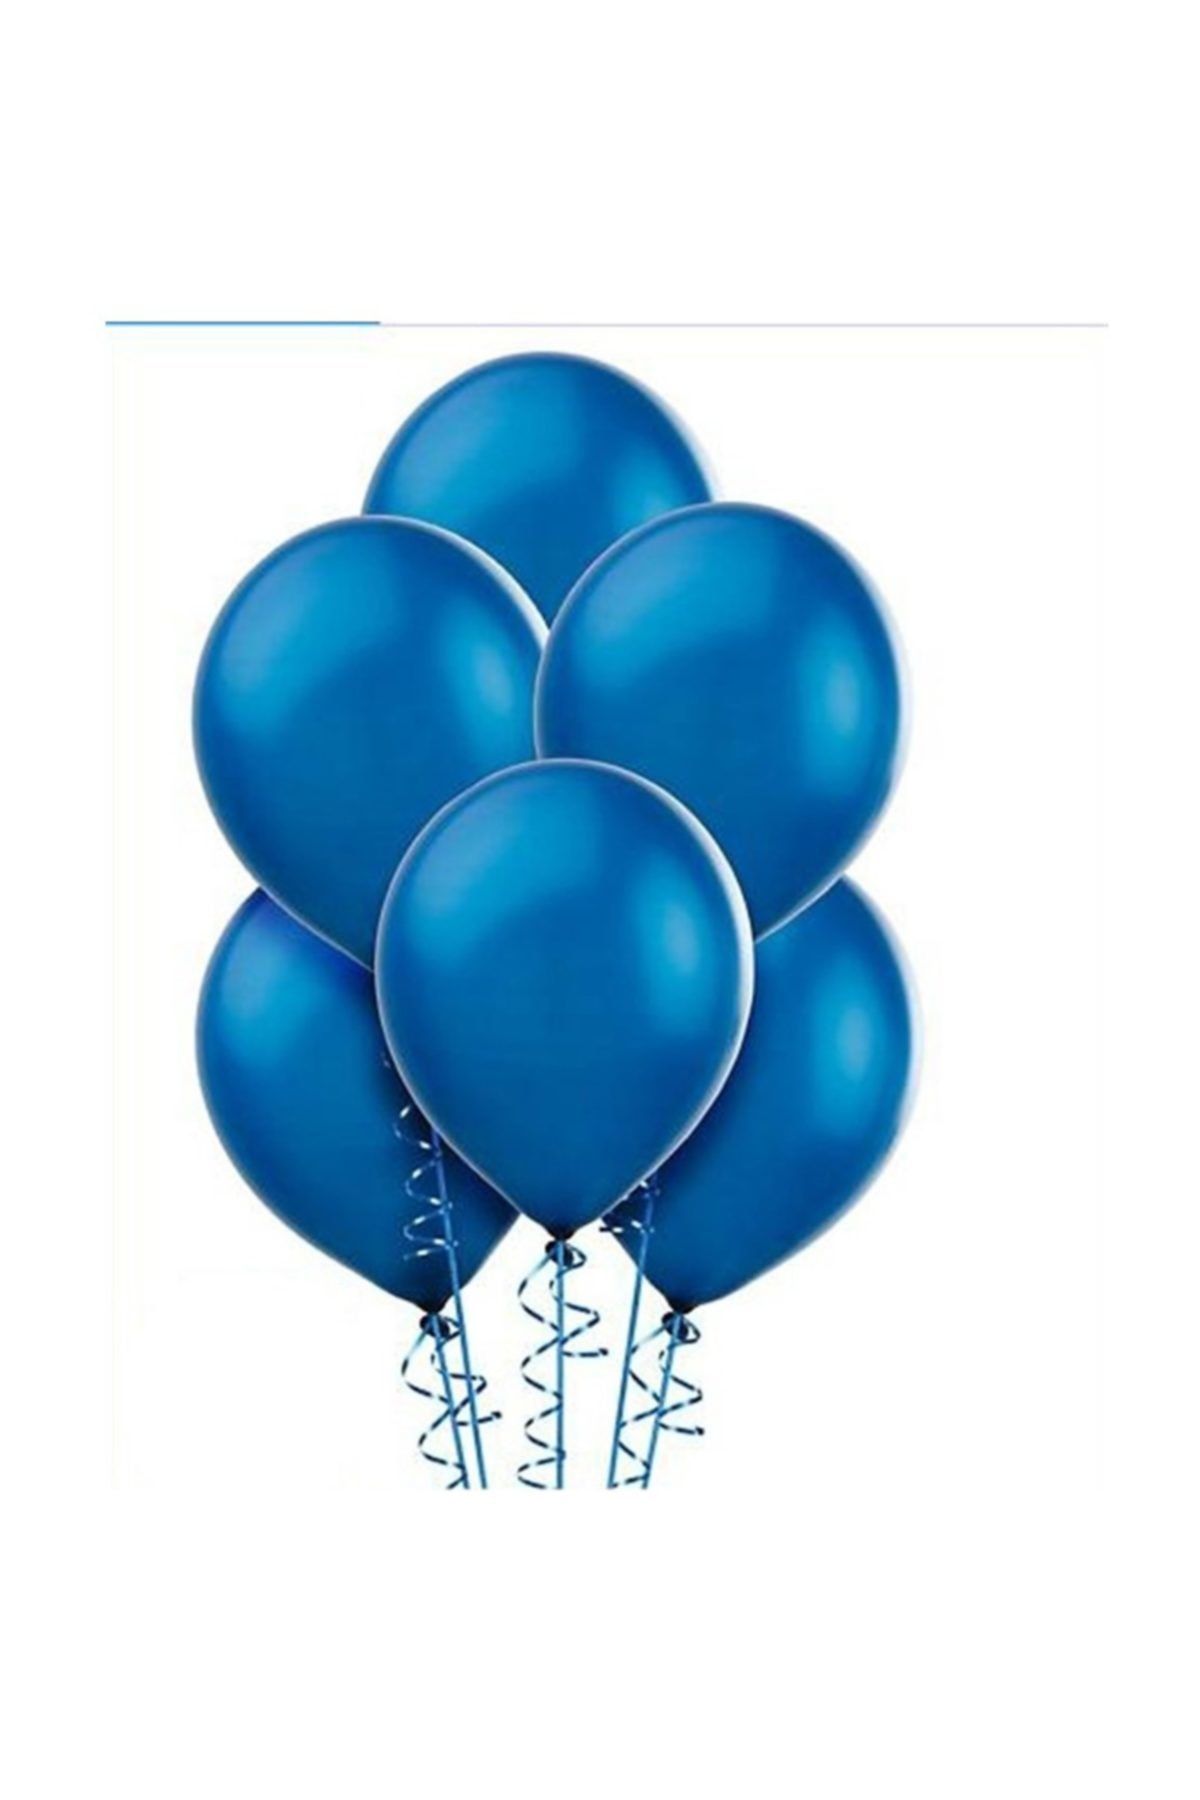 Cansüs Mavi Metalik Balon 10'lu